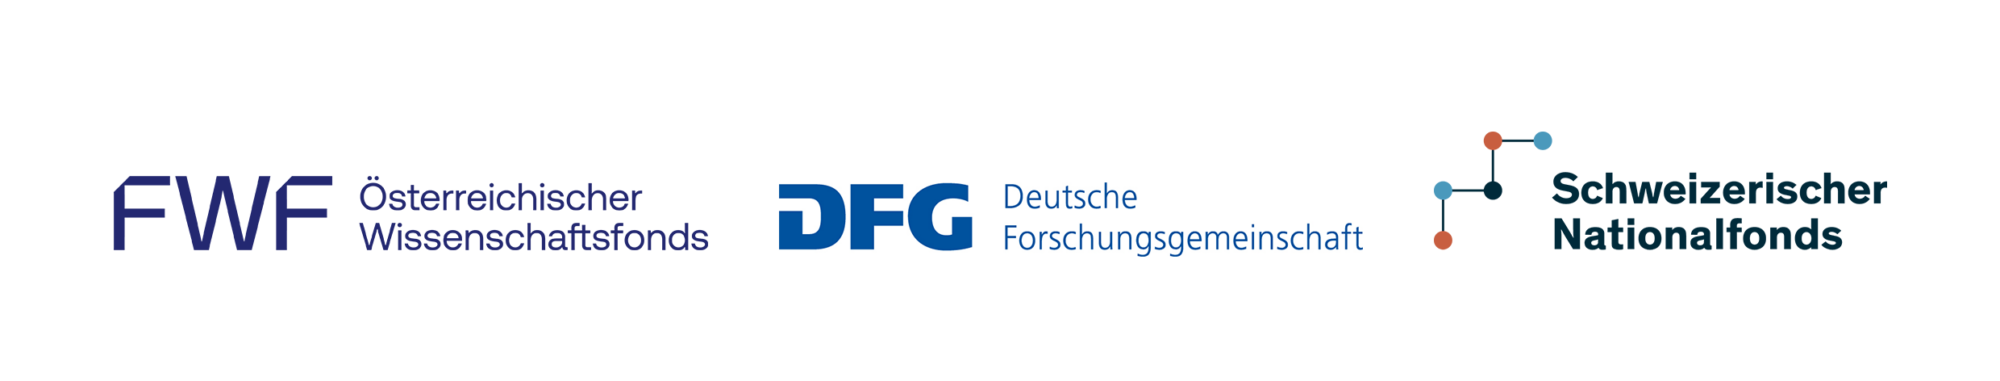 Projektförderung:
Österreichischer Wissenschaftsfonds (FWF), Deutsche Forschungsgemeinschaft (DFG), Schweizerischer Nationalfonds (SNF)